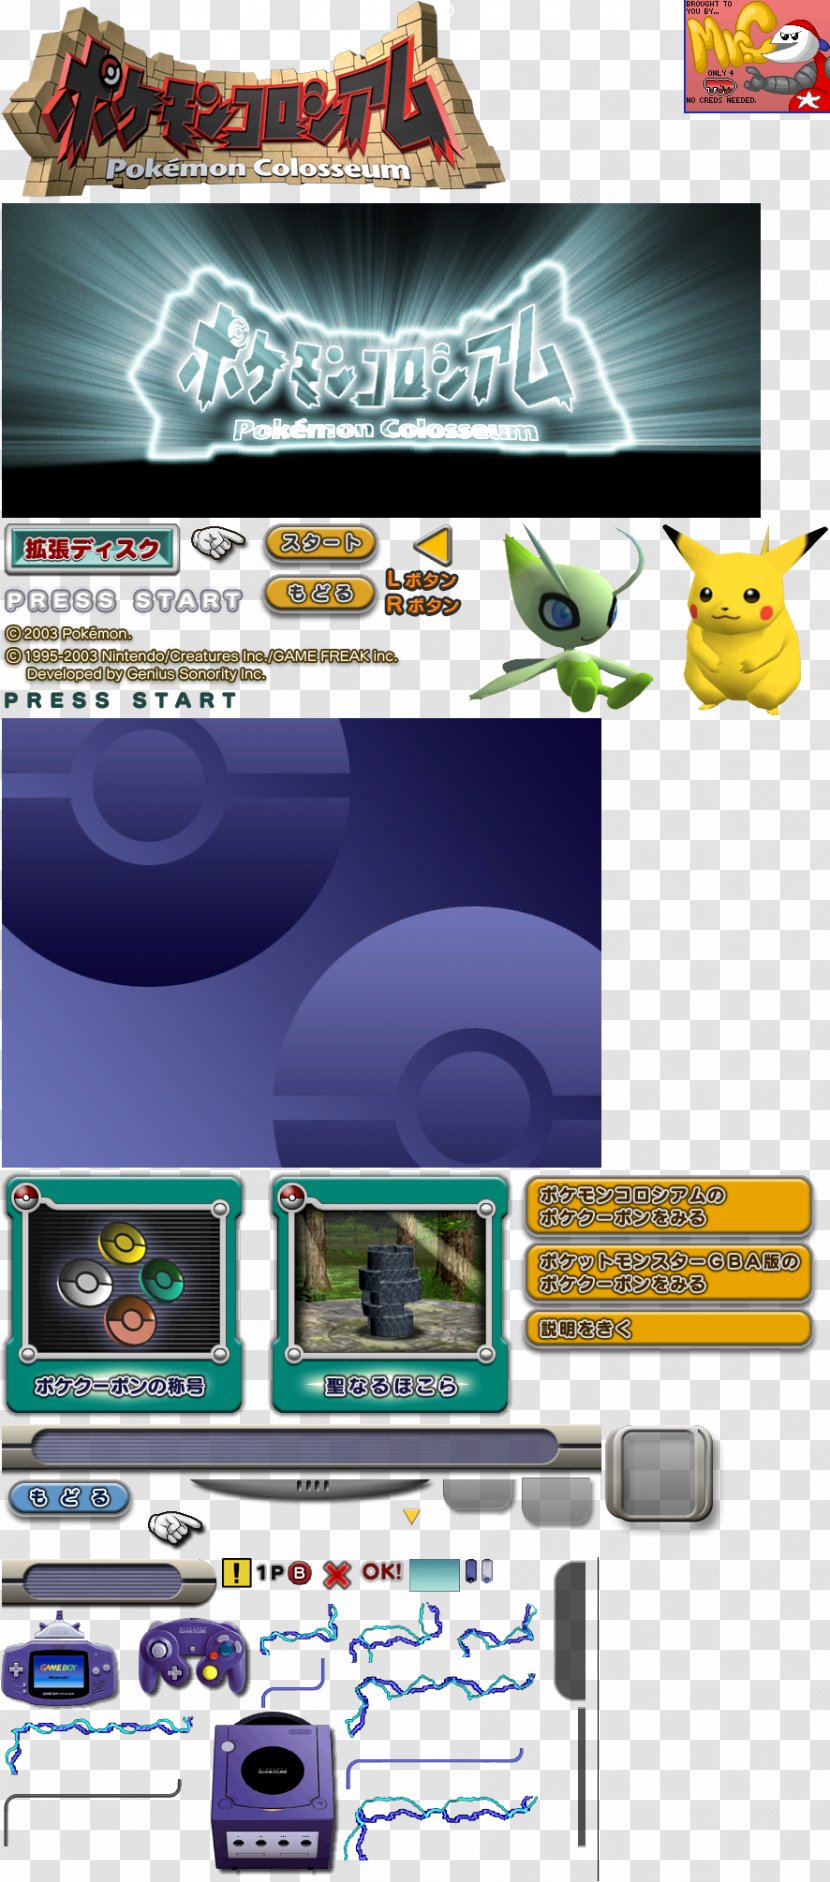 Pokémon Colosseum GameCube Screenshot Logo - Flash Memory Cards - Menu Game Transparent PNG